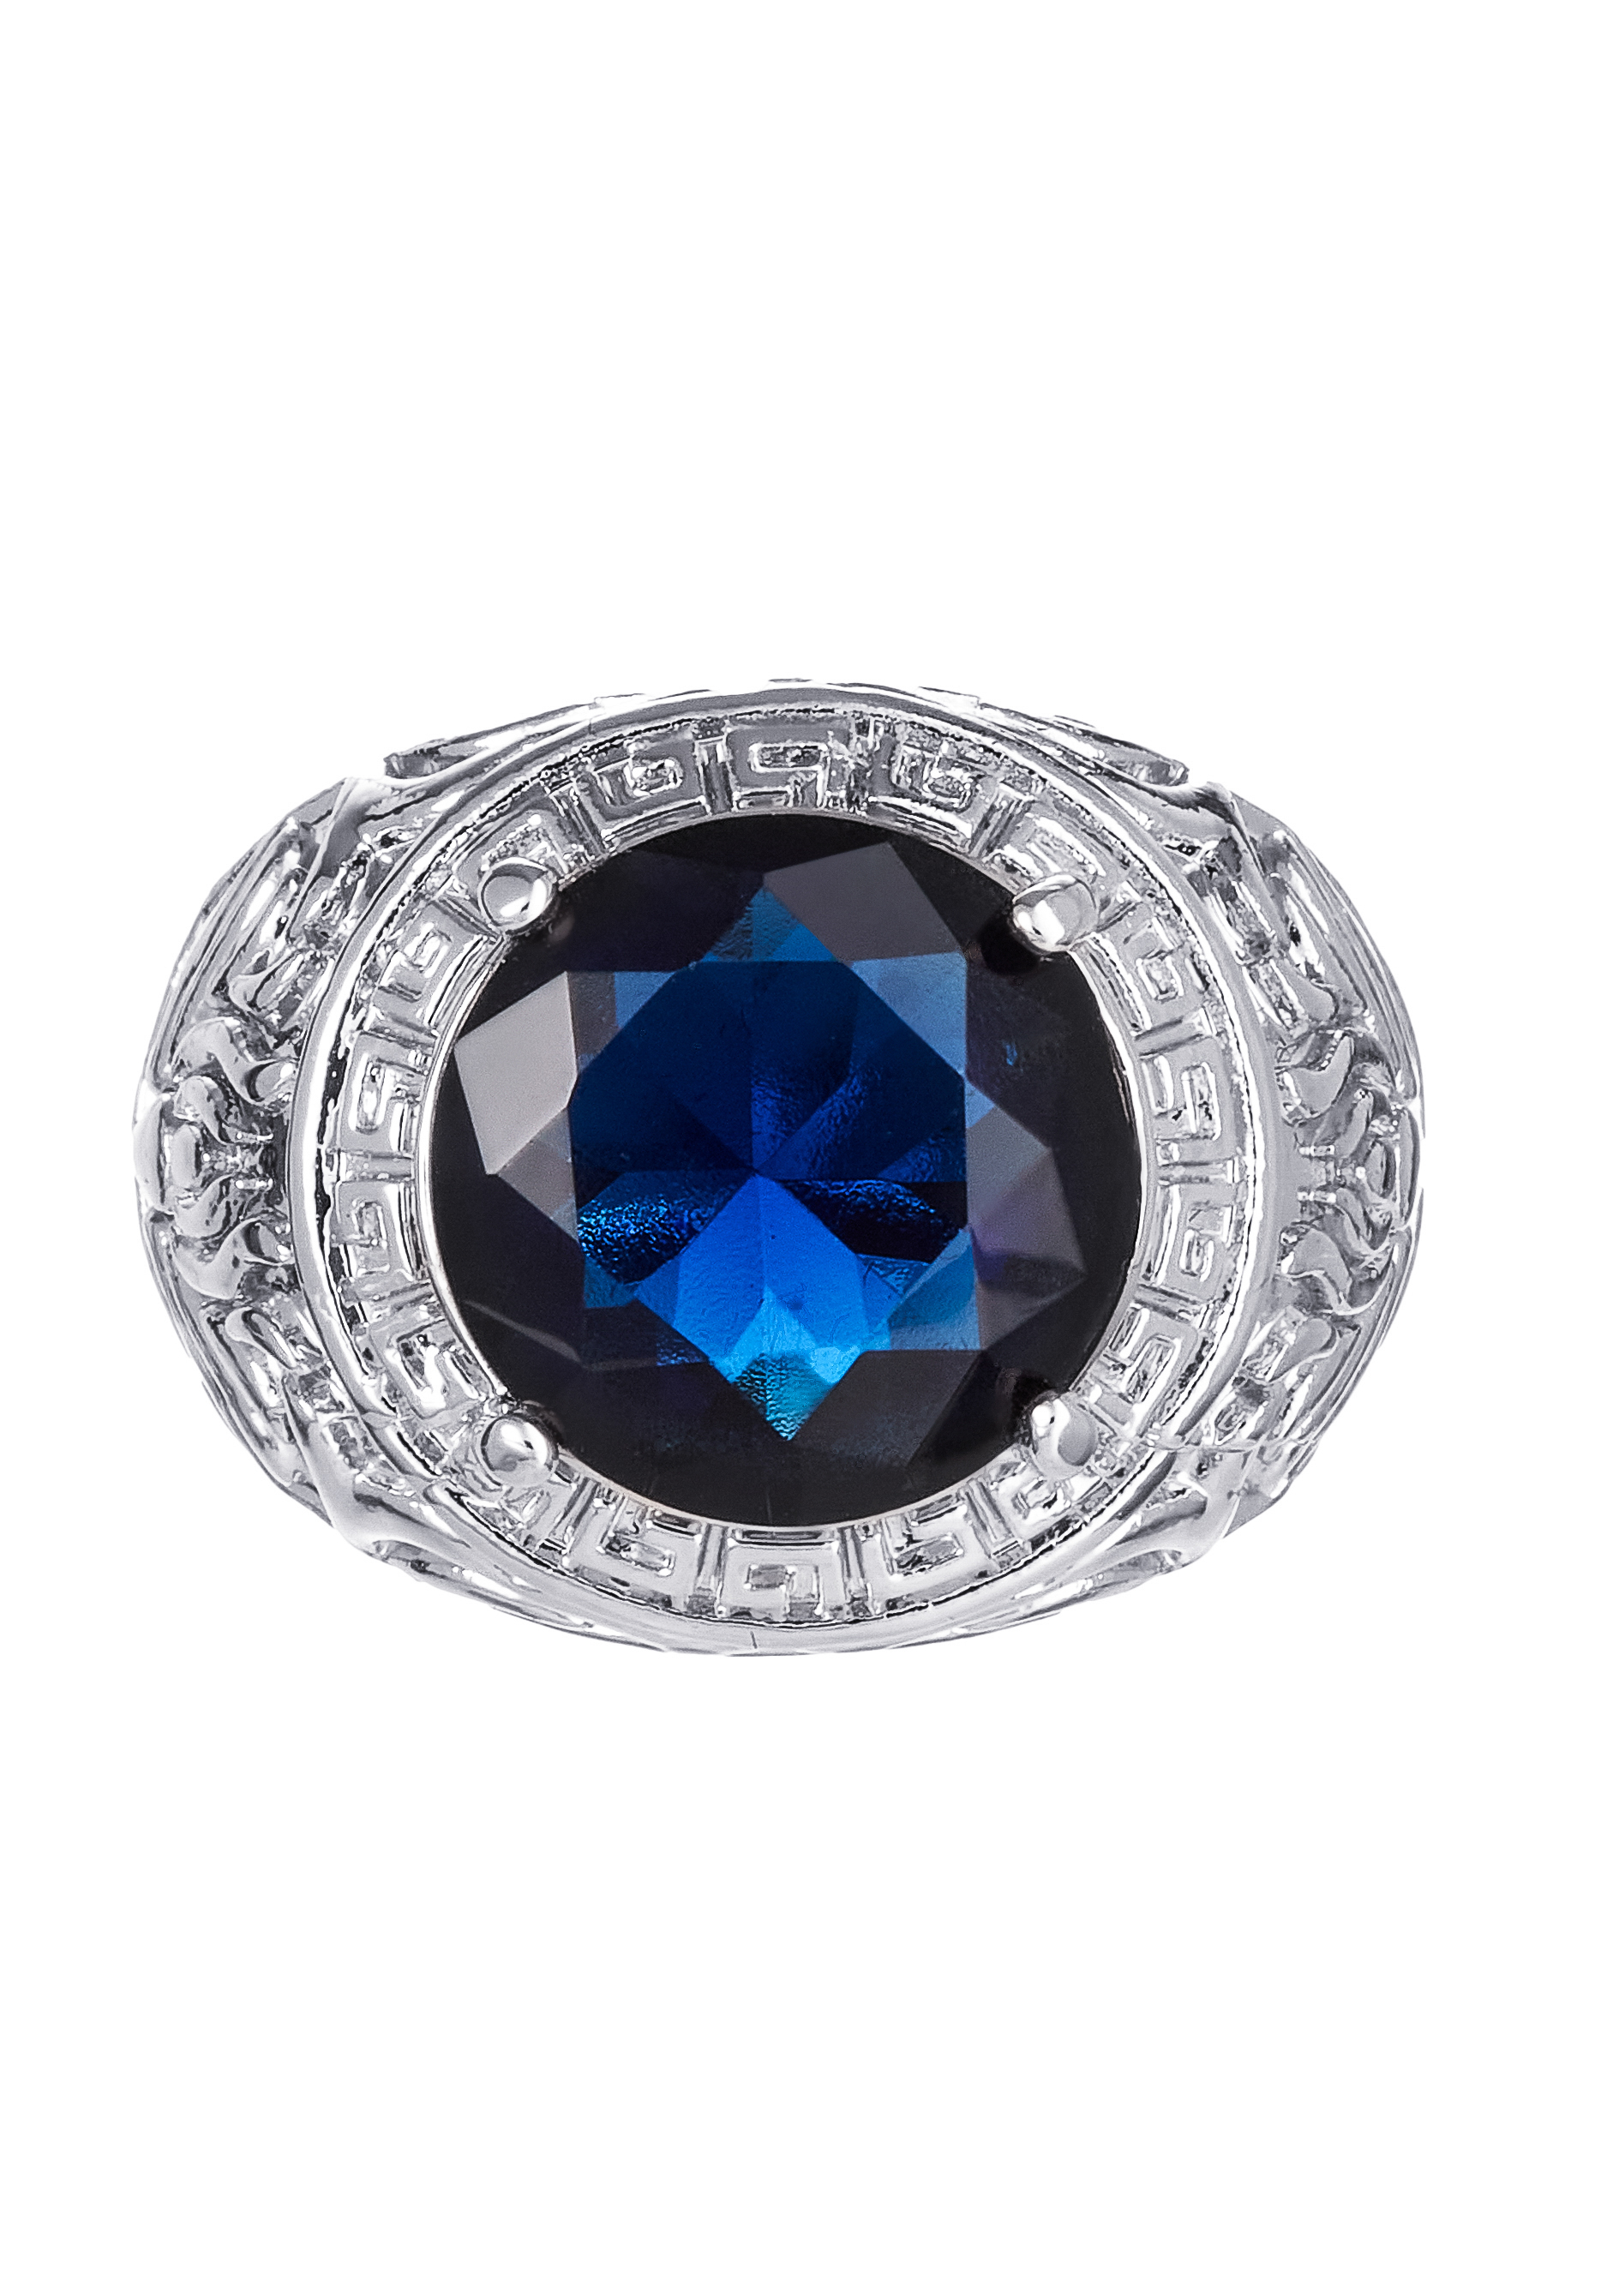 Комплект "Очаровательный вечер" Apsara, цвет синий, размер 19 перстень - фото 8